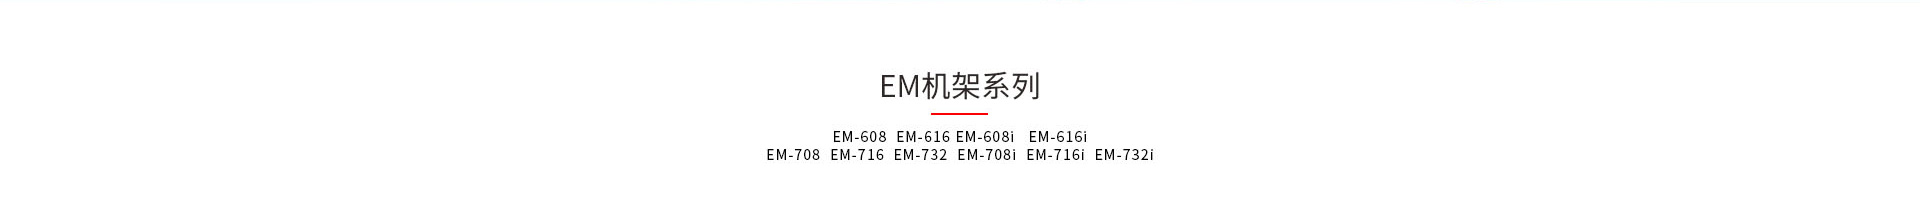 九游会卫士EM和EMI机架式kvm产品型号大全